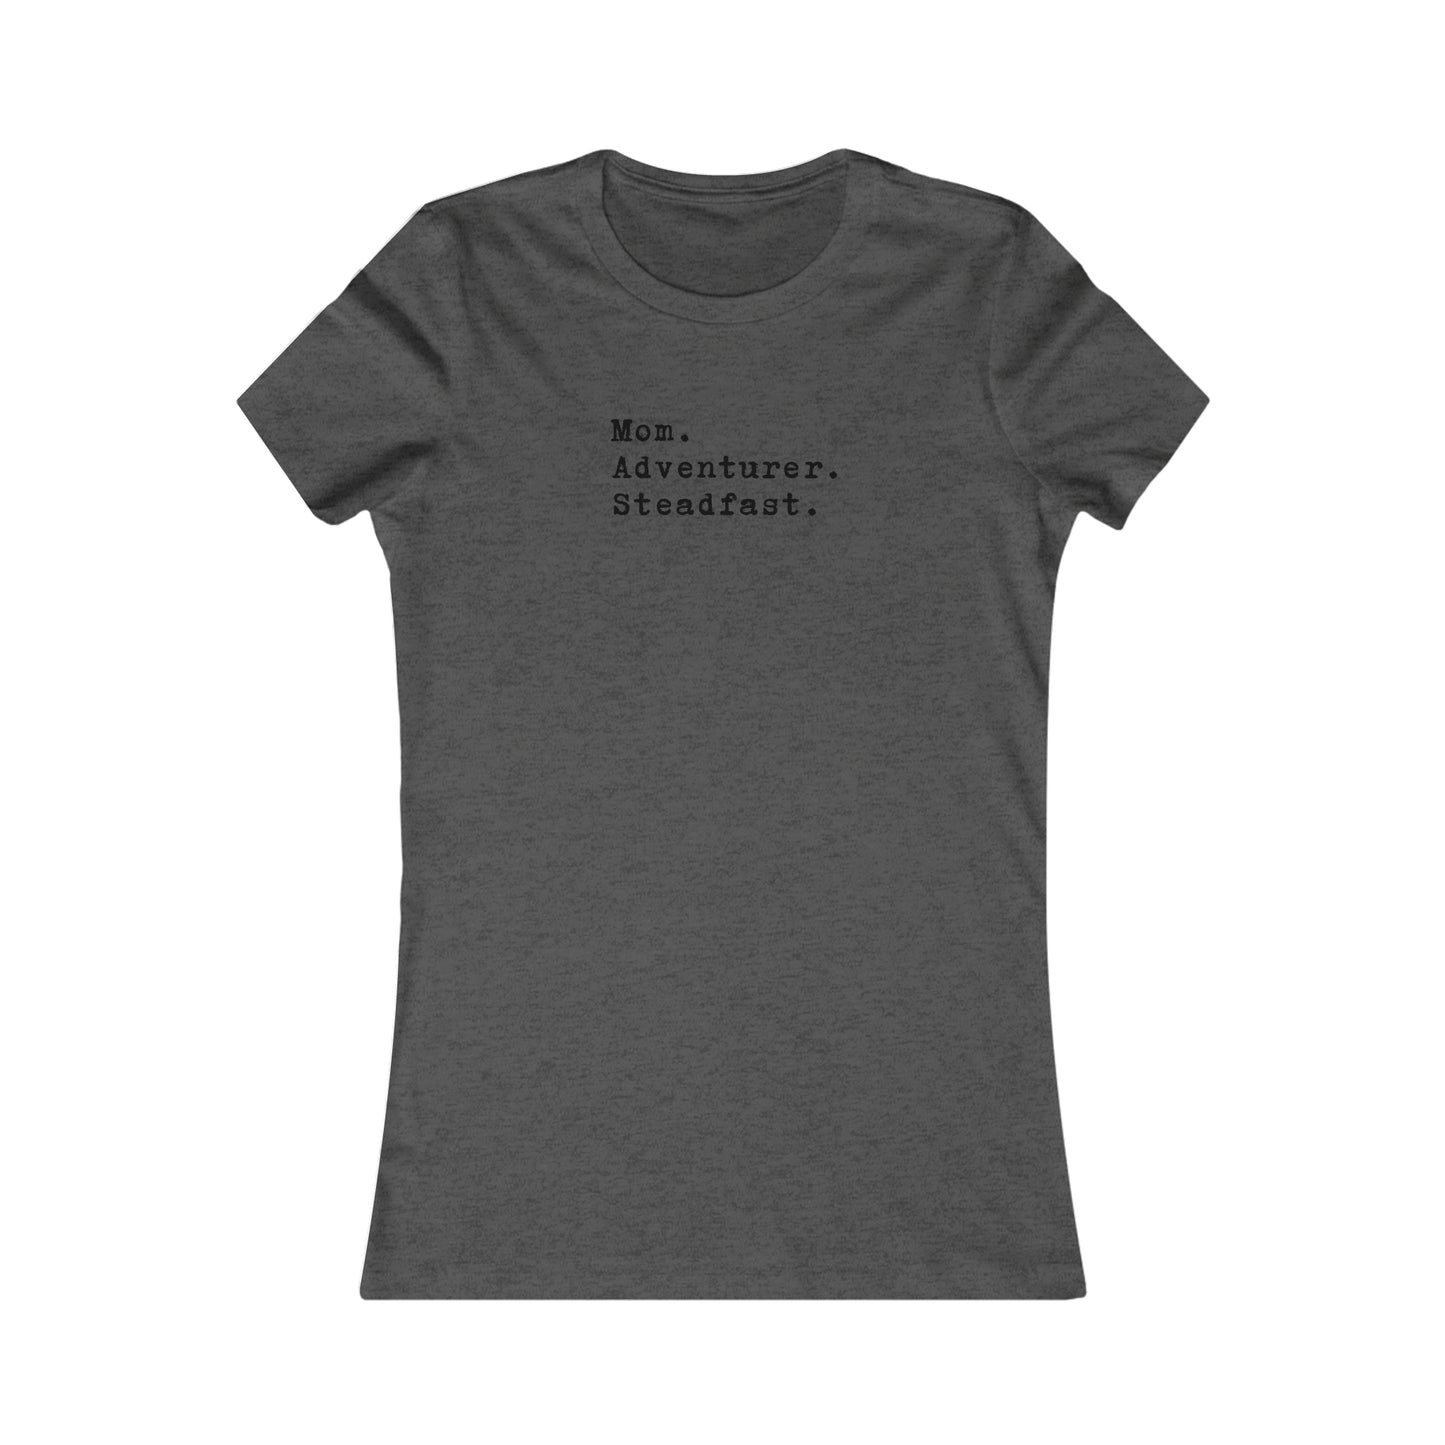 Mom.Adventurer.Steadfast. Women's T-Shirt